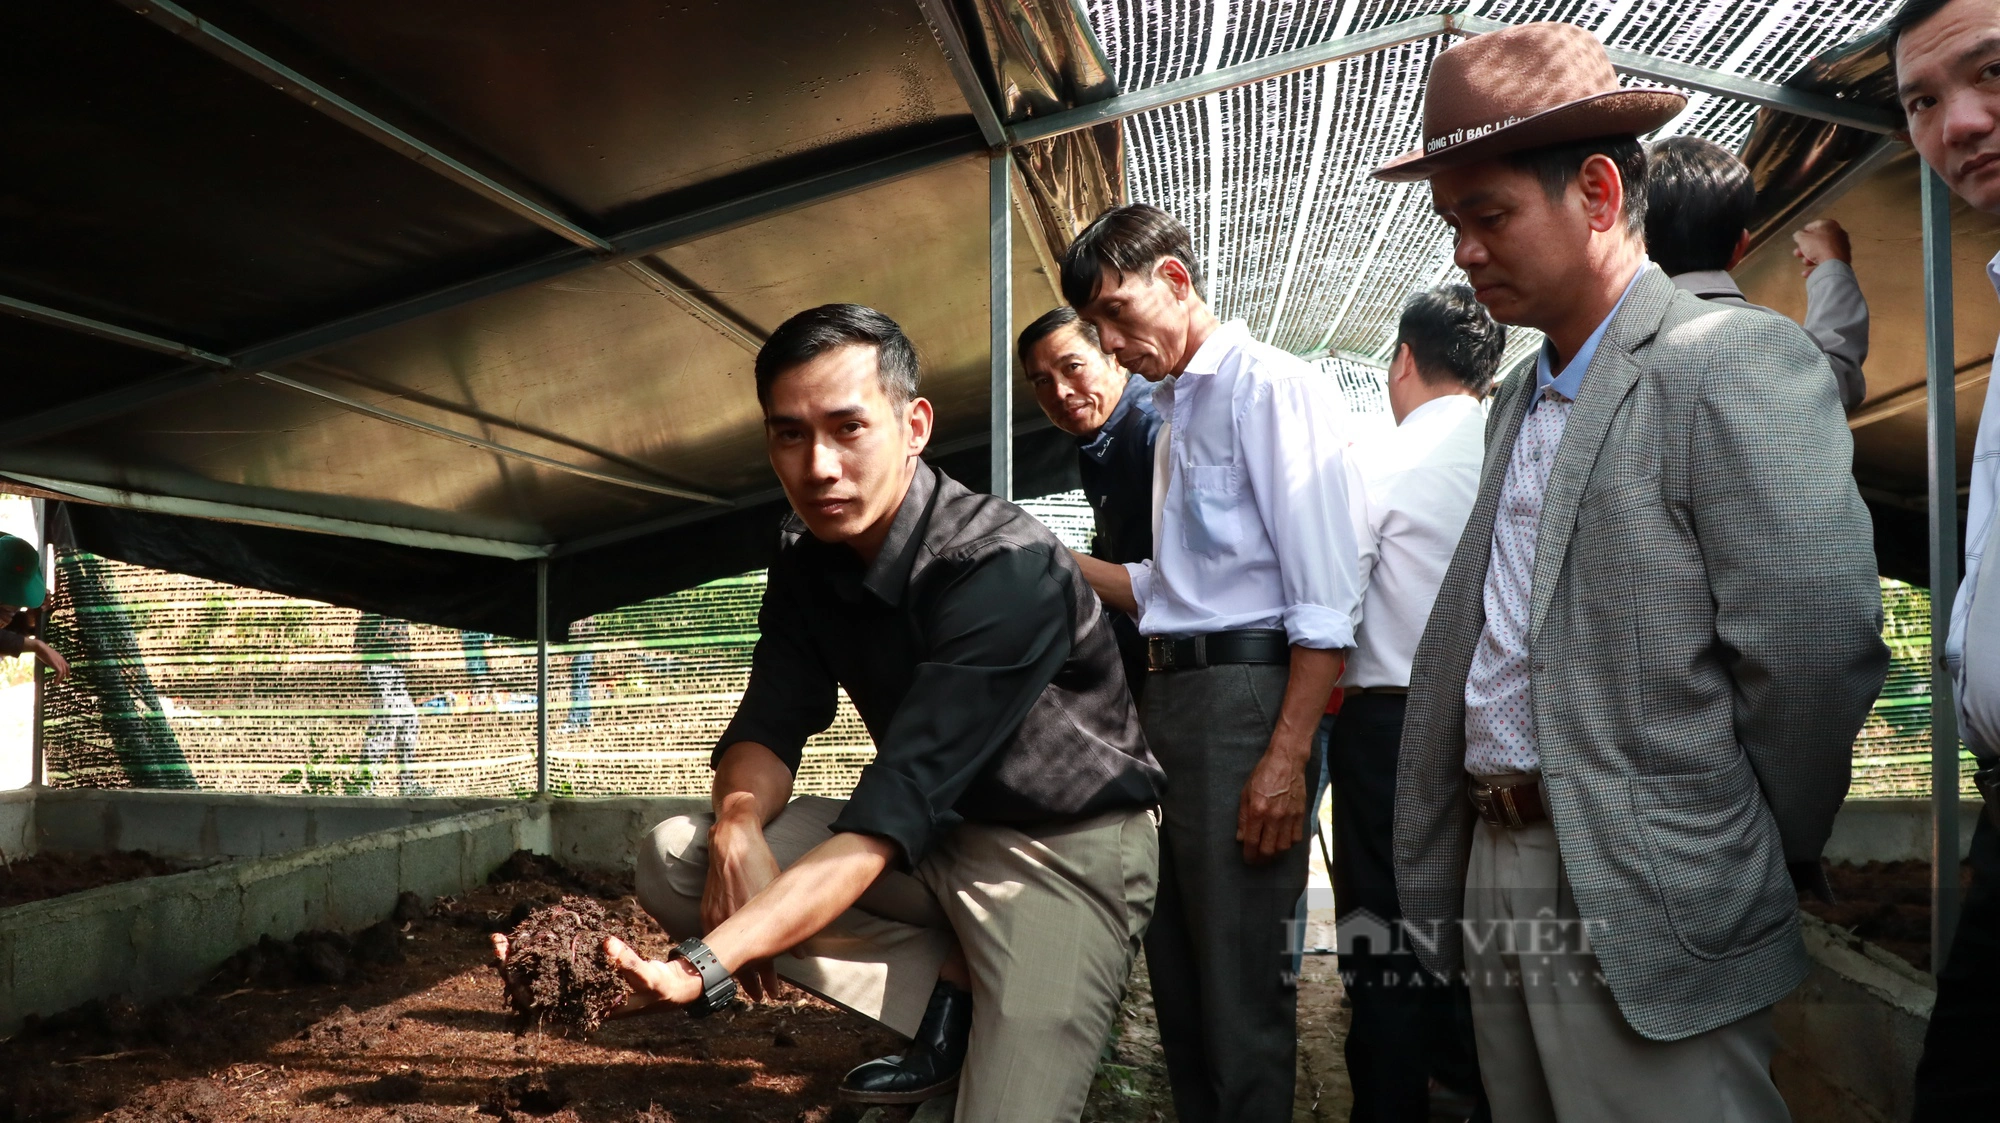 Hội ND Lâm Đồng đưa cán bộ, hội viên, nông dân đi thăm mô hình nuôi trùn quế, thu hơn 30 triệu/tháng- Ảnh 1.